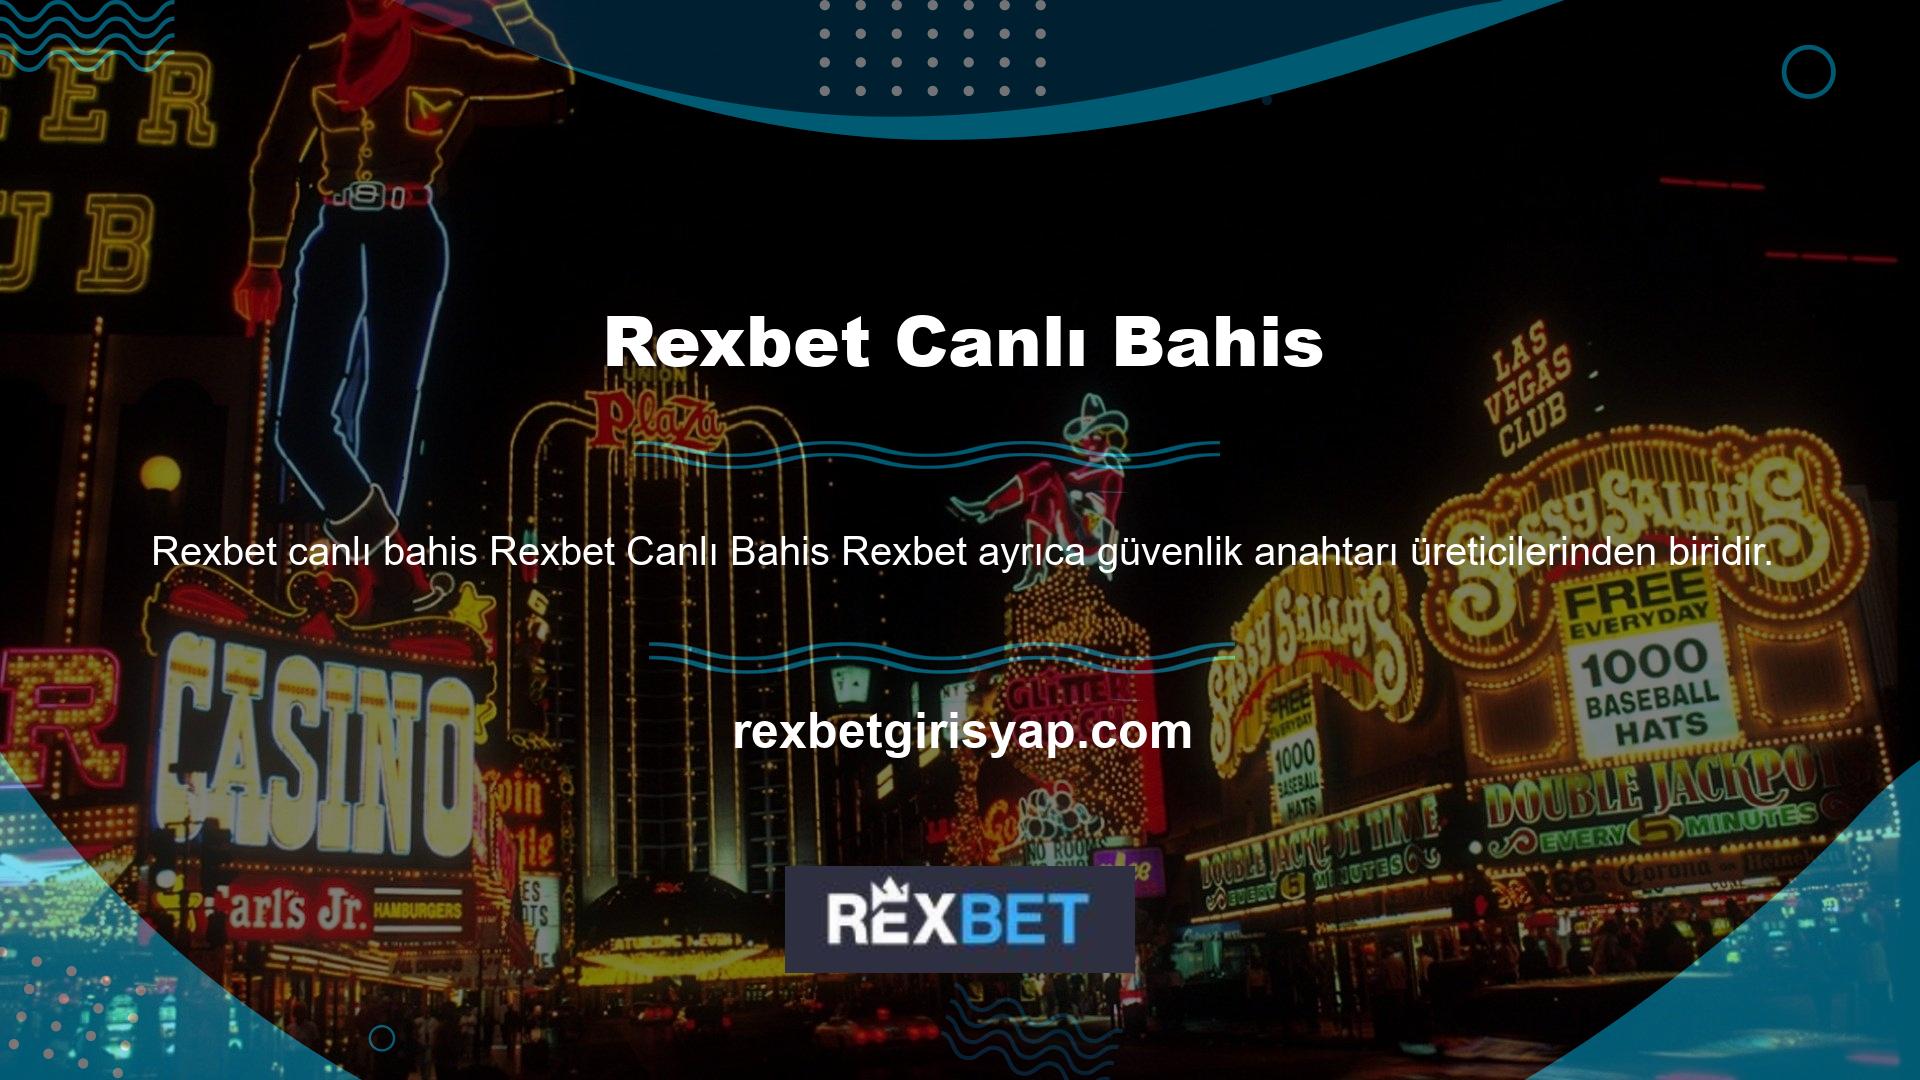 Rexbet, tüm Türk casino oyuncuları için en popüler ve güvenilir bahis sitelerinden biridir